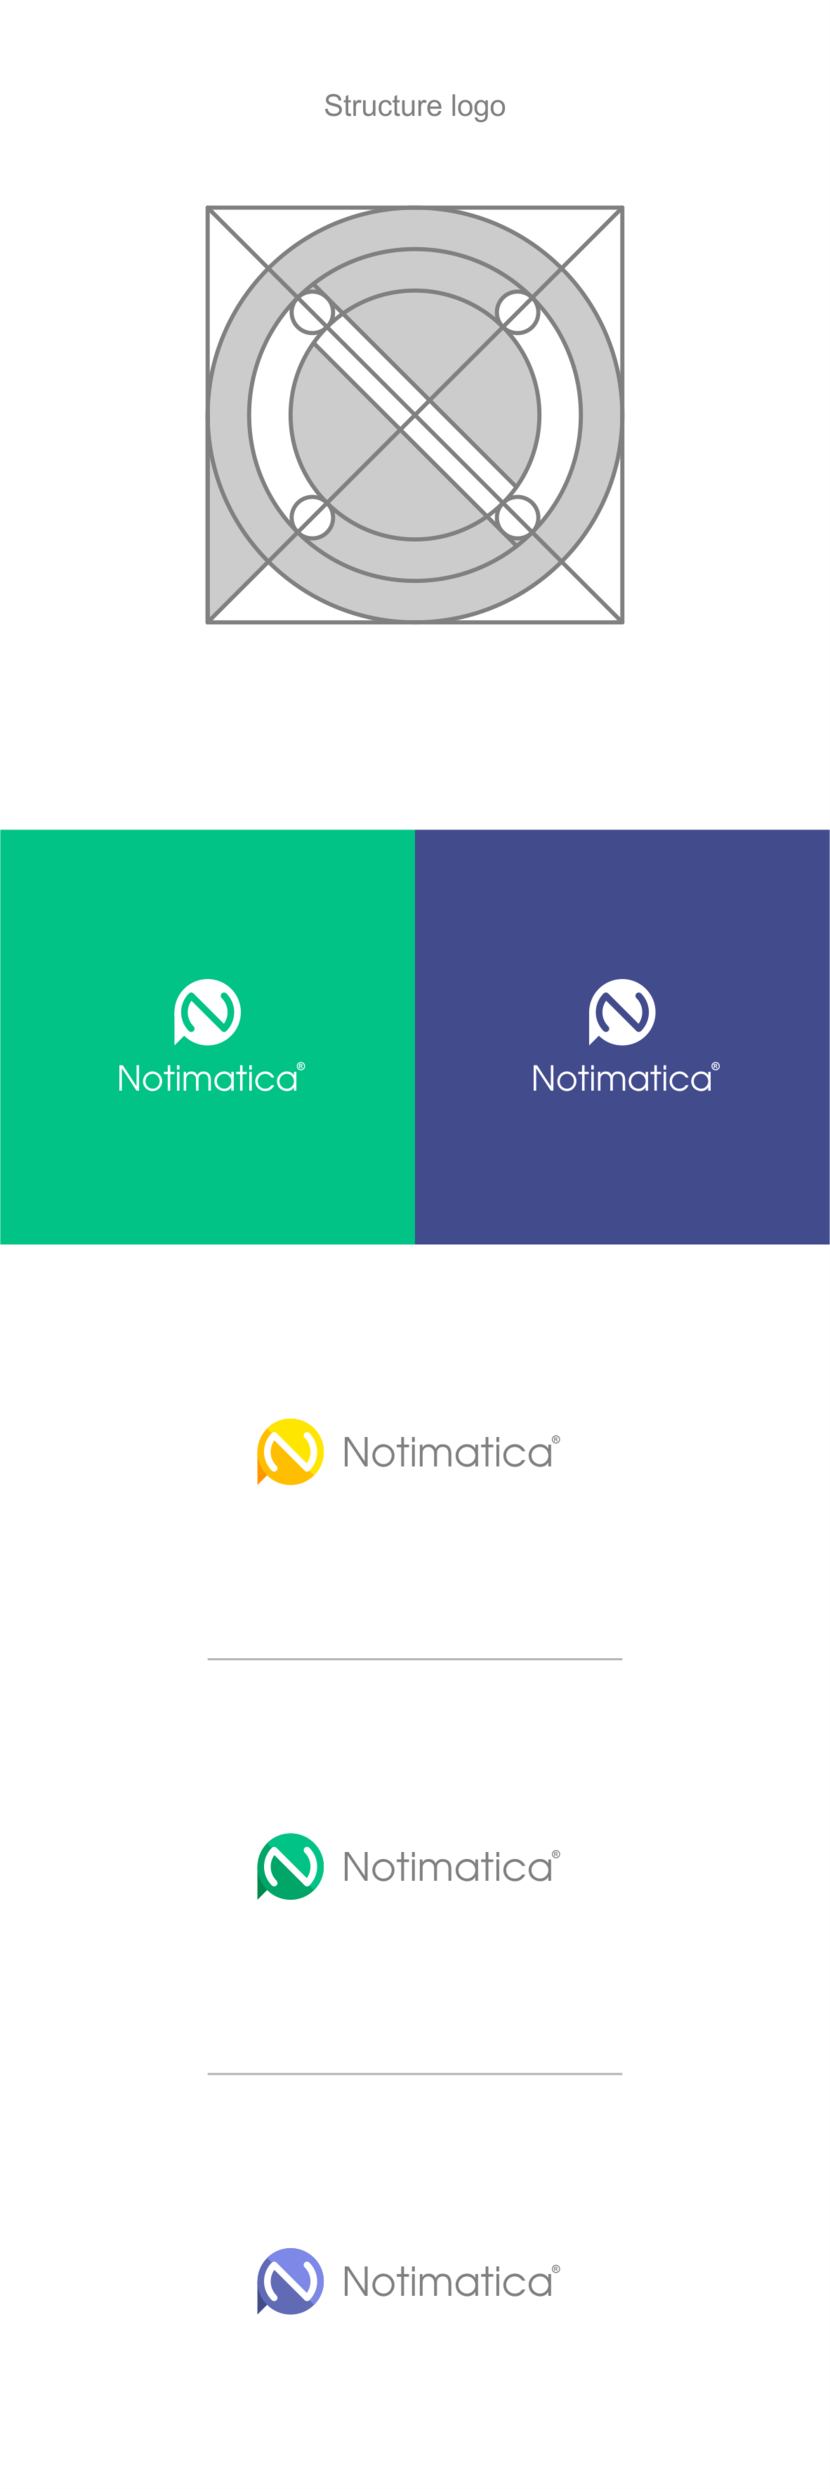 + Выполнимо Разработать логотип веб-сервиса Notimatica.io